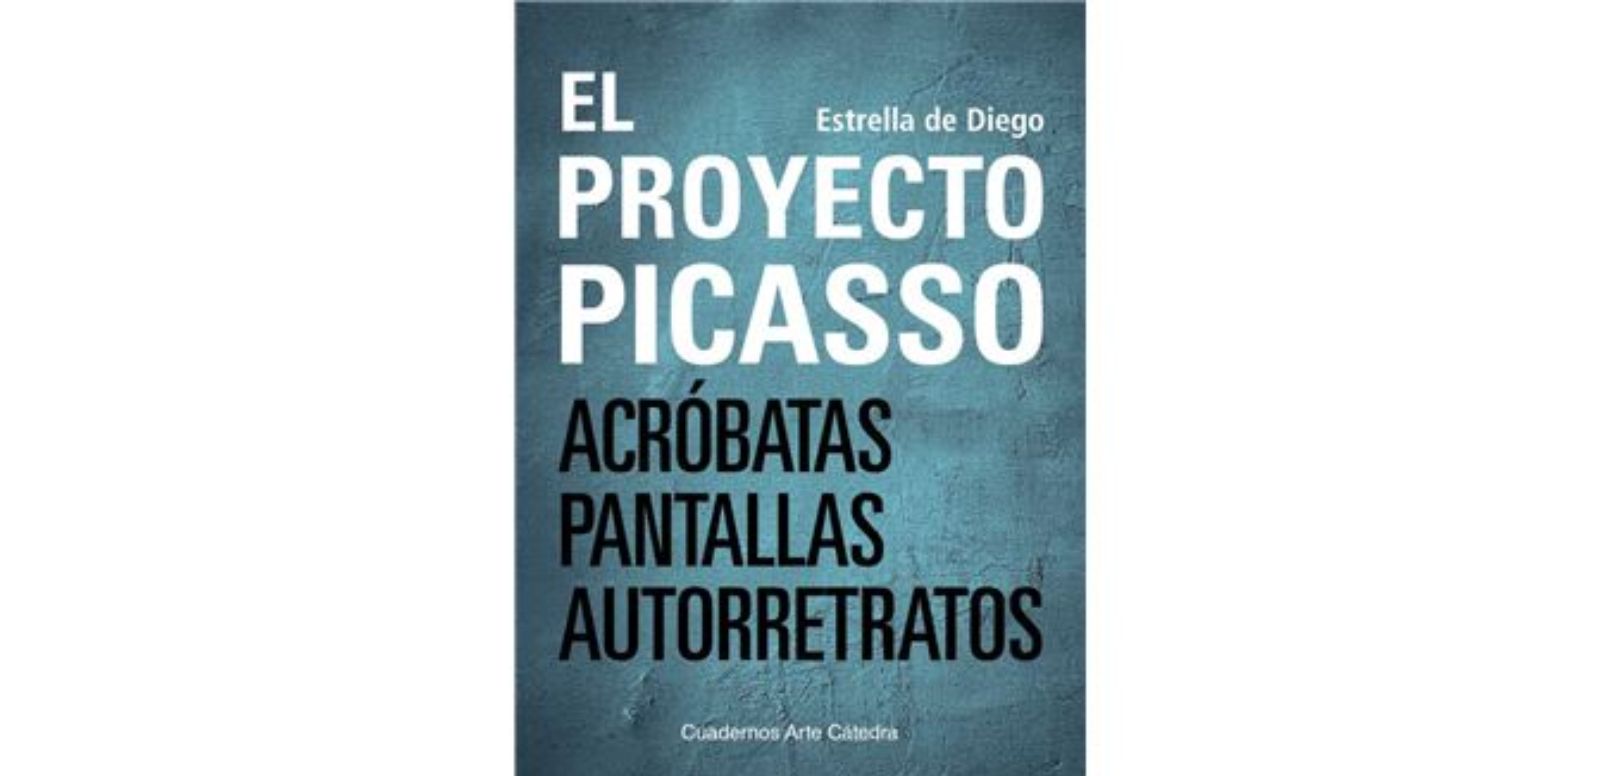 Estrella de Diego "El Proyecto Picasso"